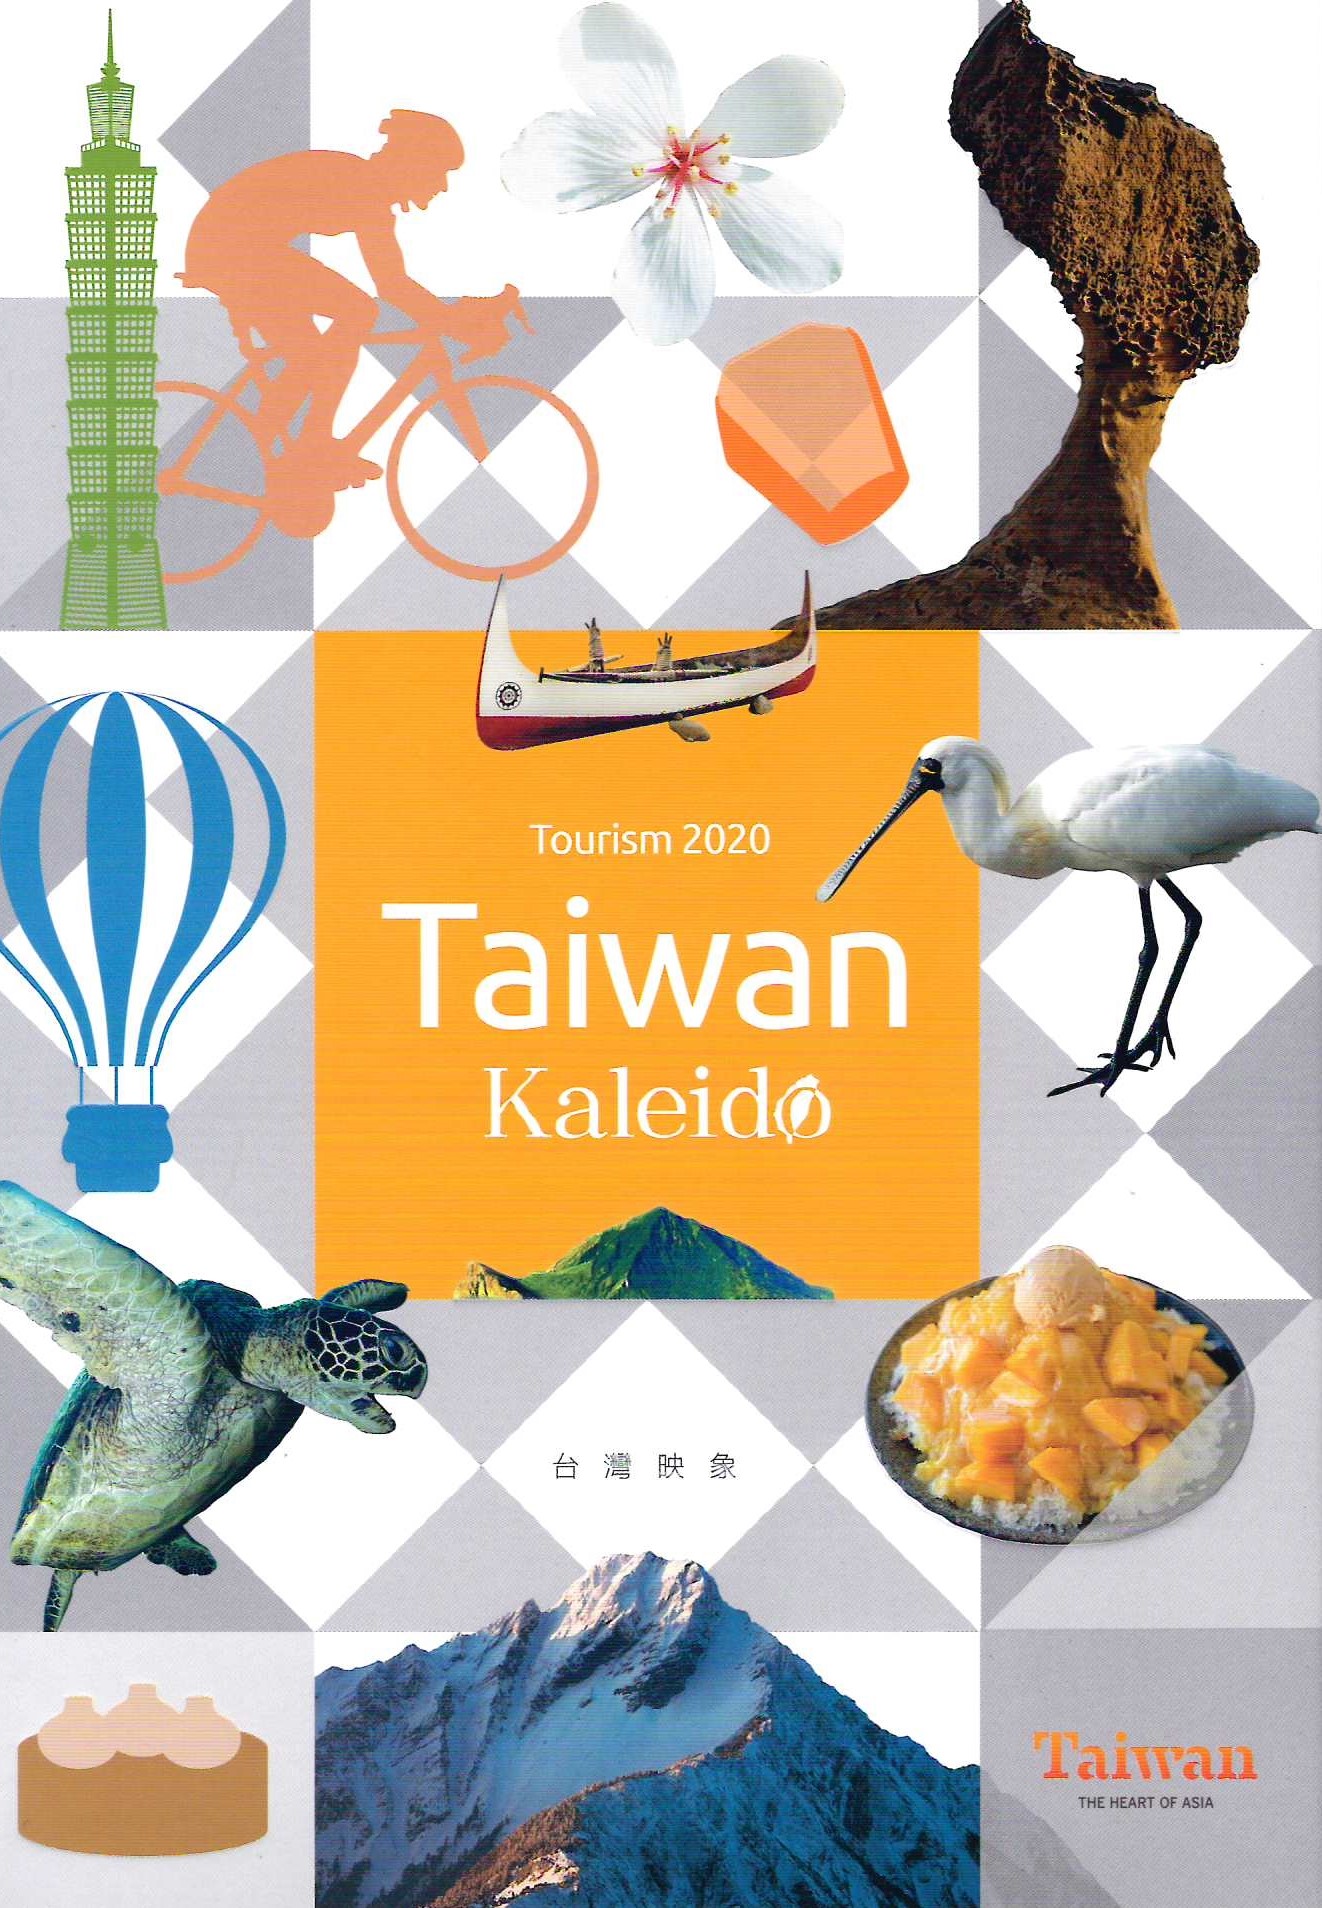 Tourism 2020 Taiwan Kaleido